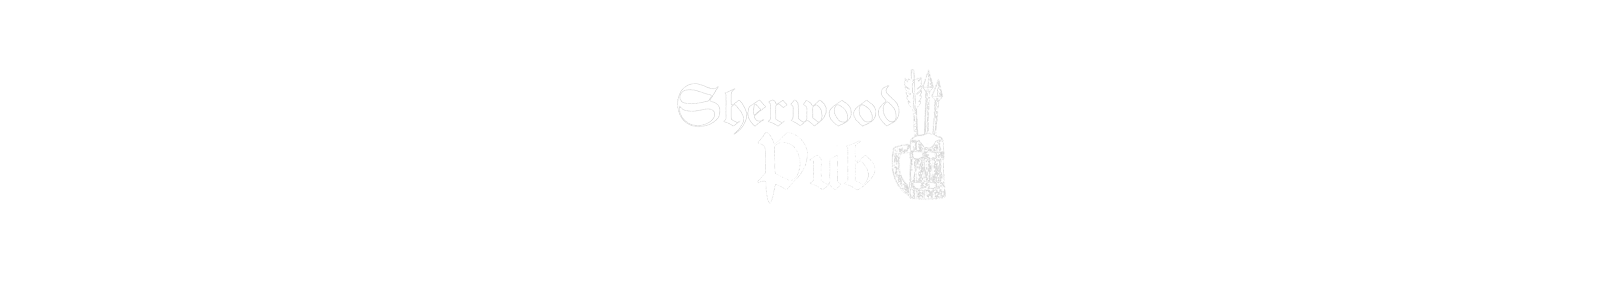 Sherwood Pub Salzano - Grigliate di carne e panini di cinghiale - Paninoteca e birreria con birre artigianali - Venezia